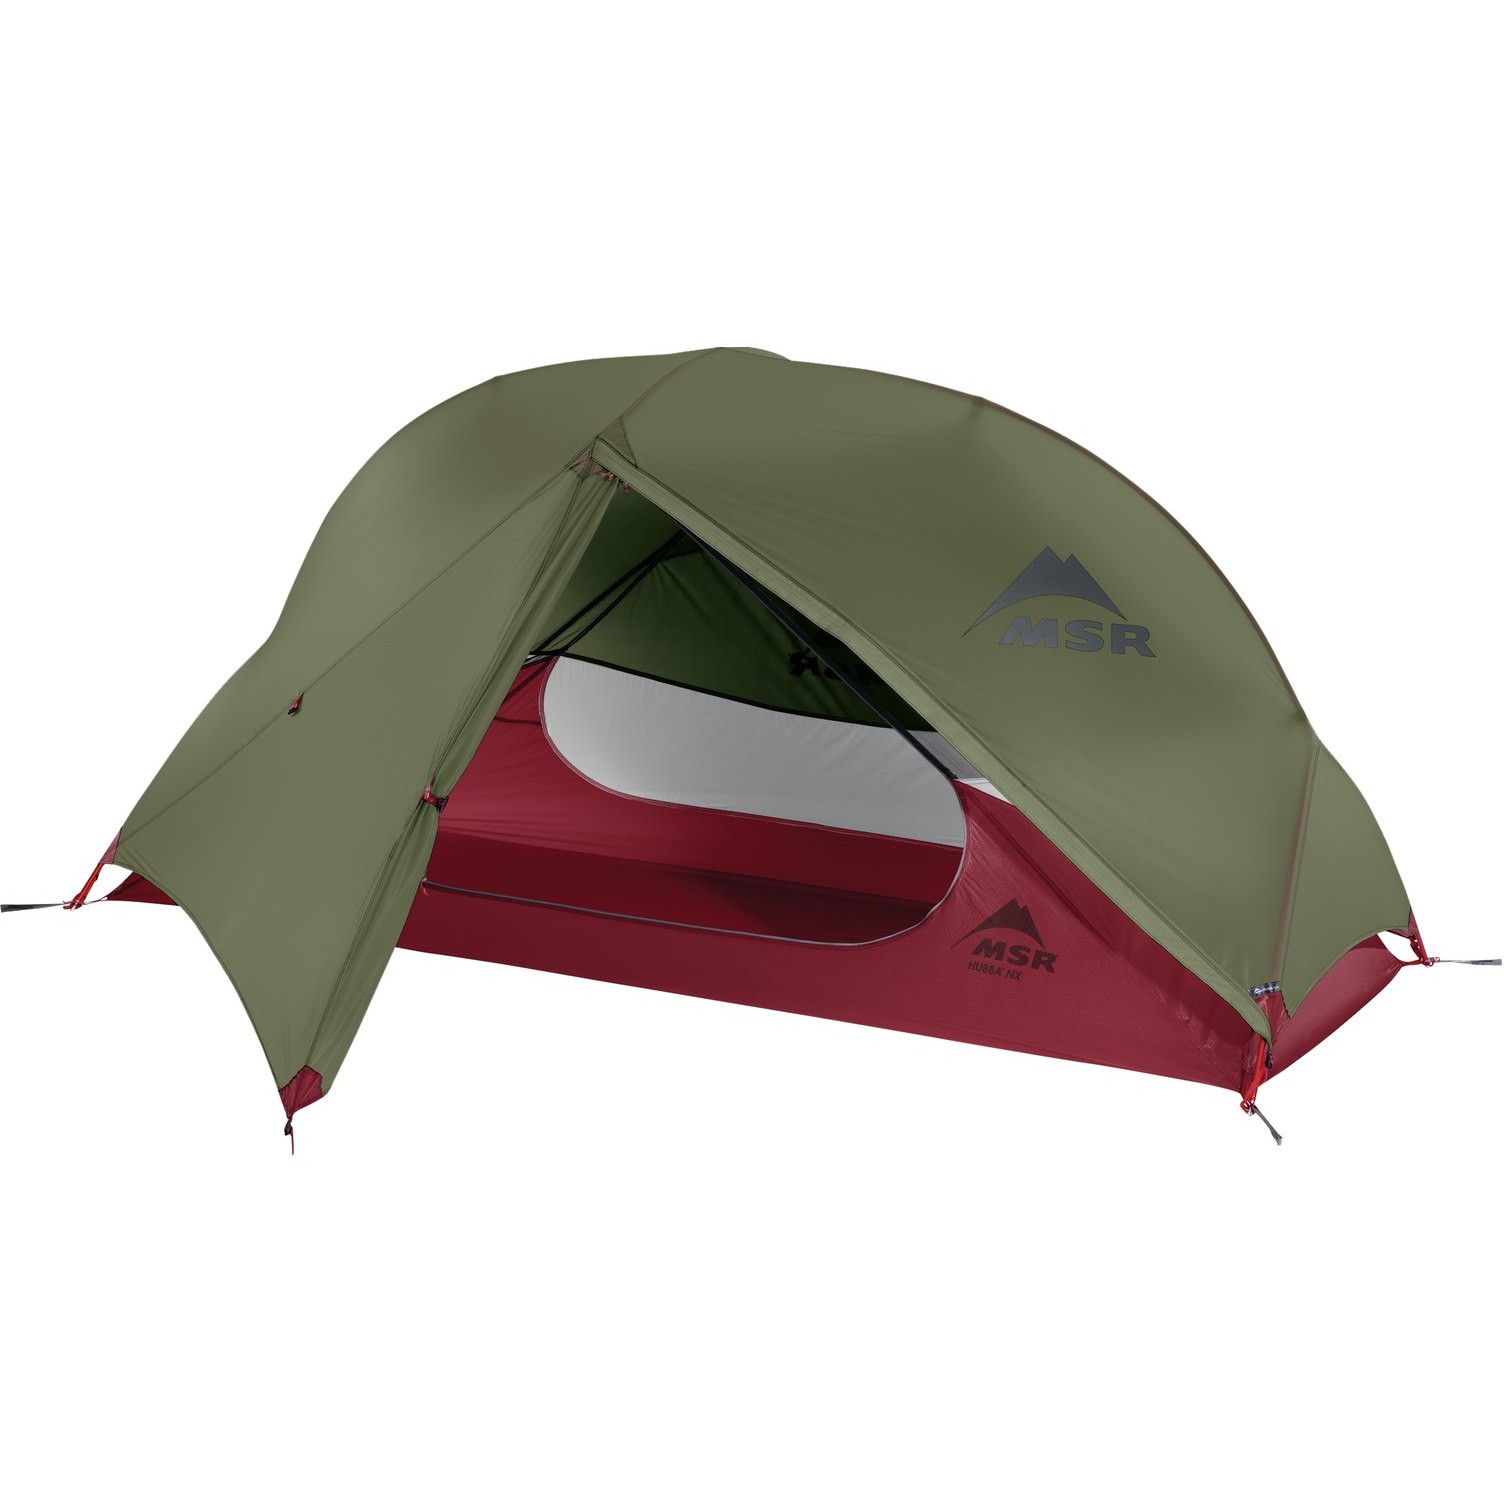 Productfoto van MSR Hubba NX Solo UL Tent - groen